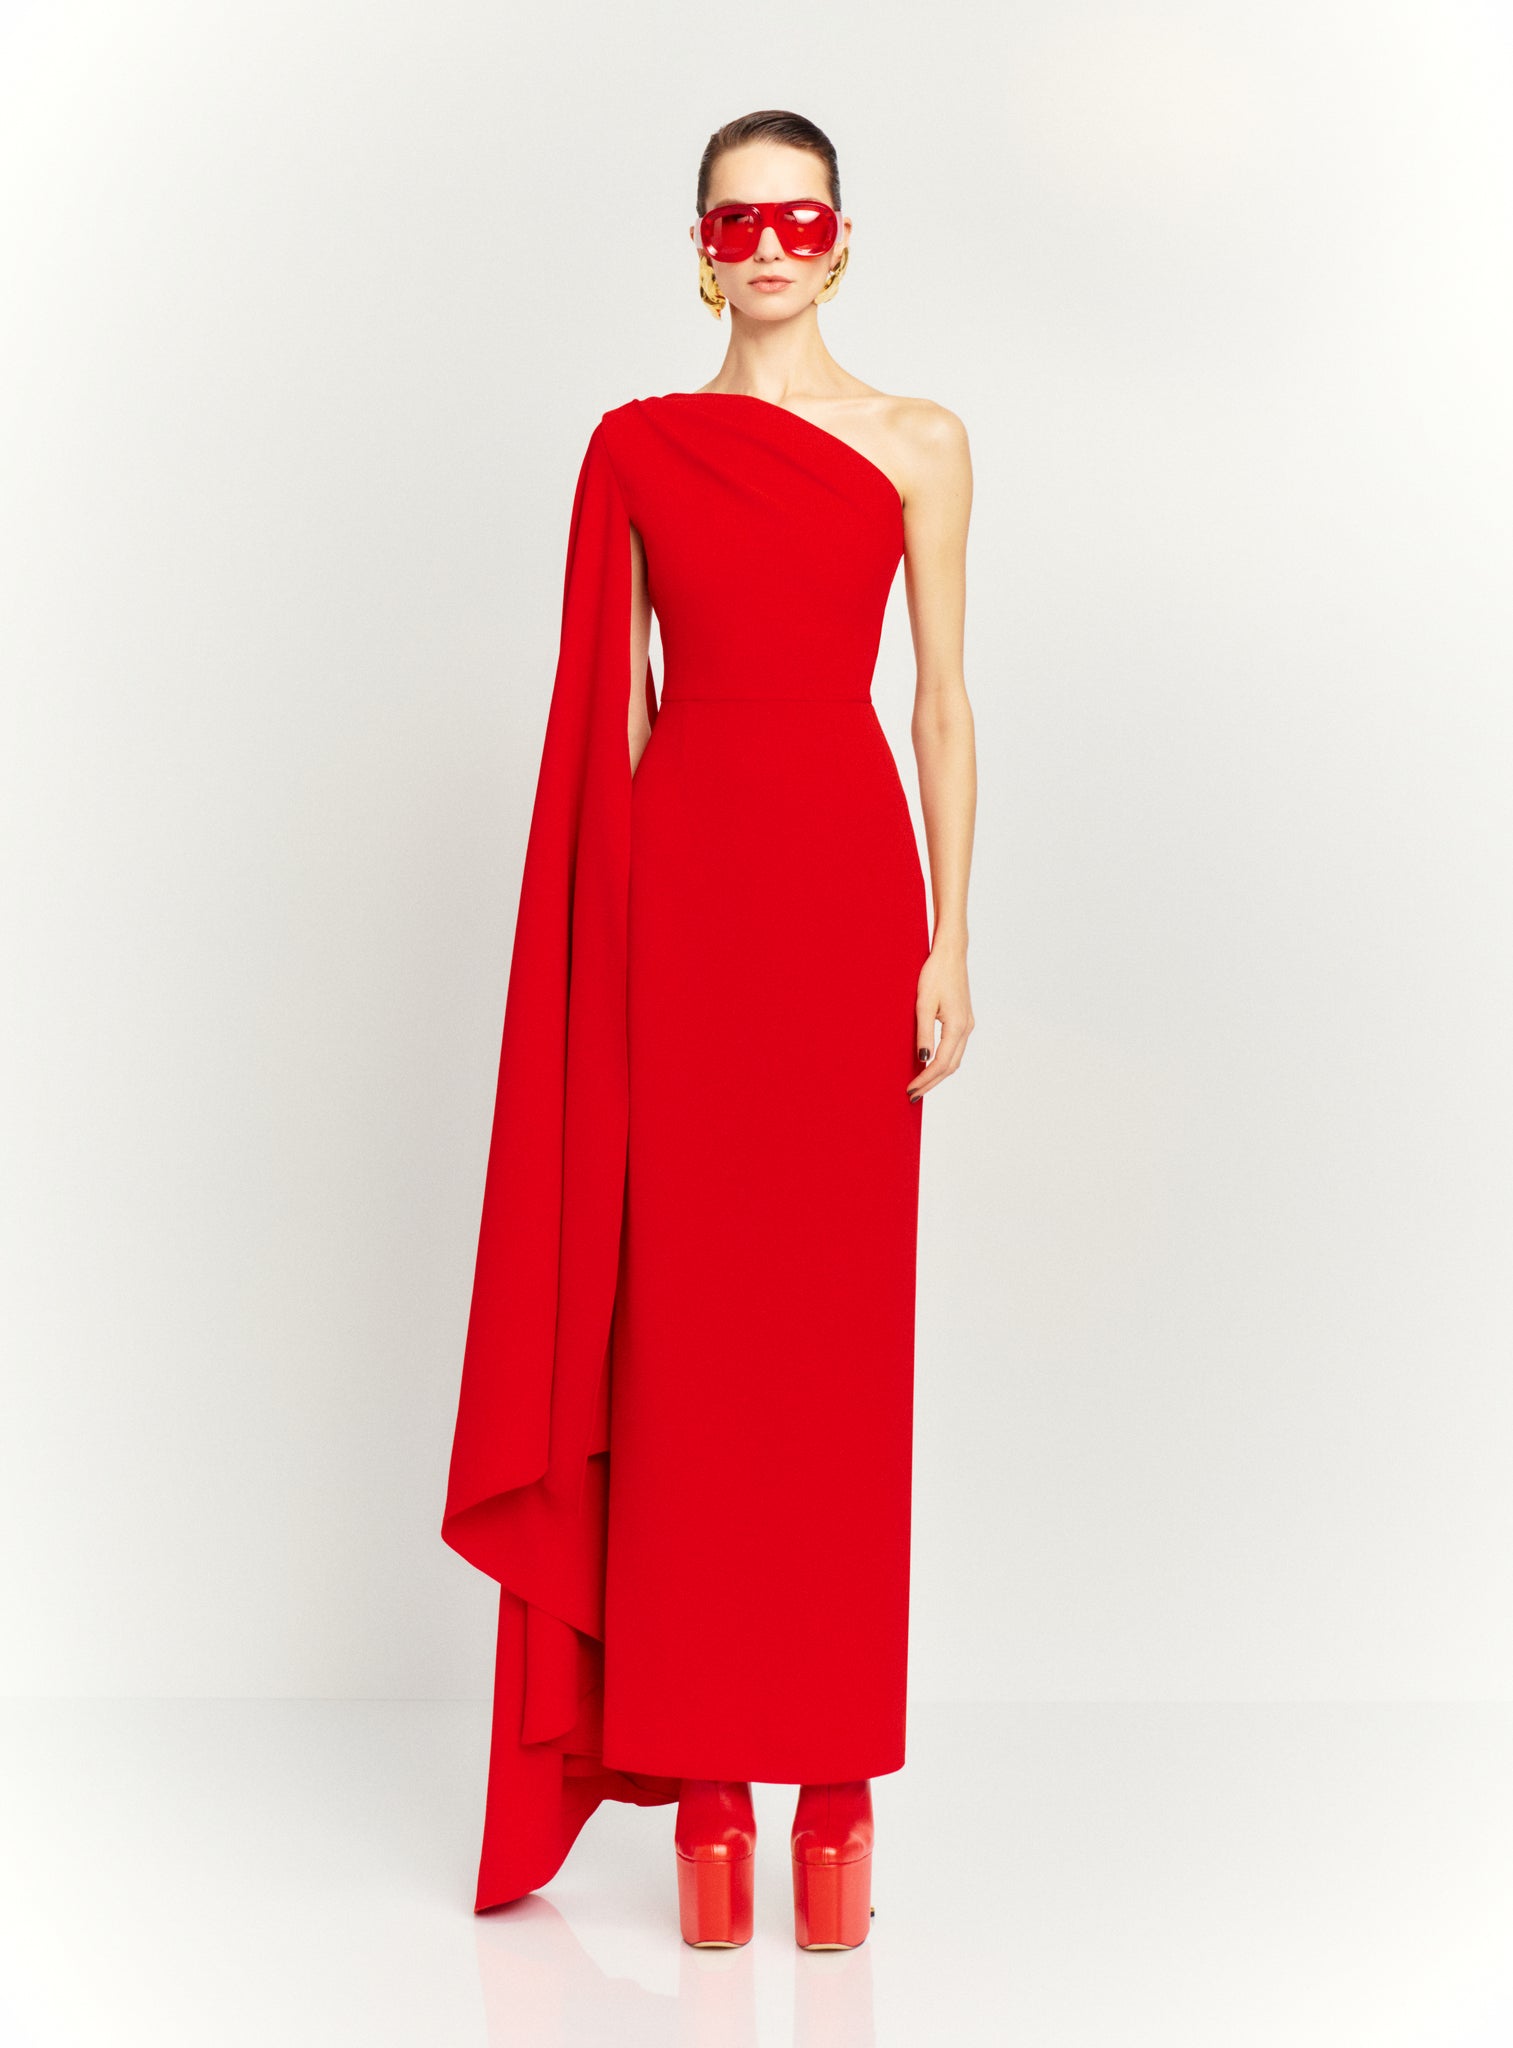 The Daria Maxi Dress in Red